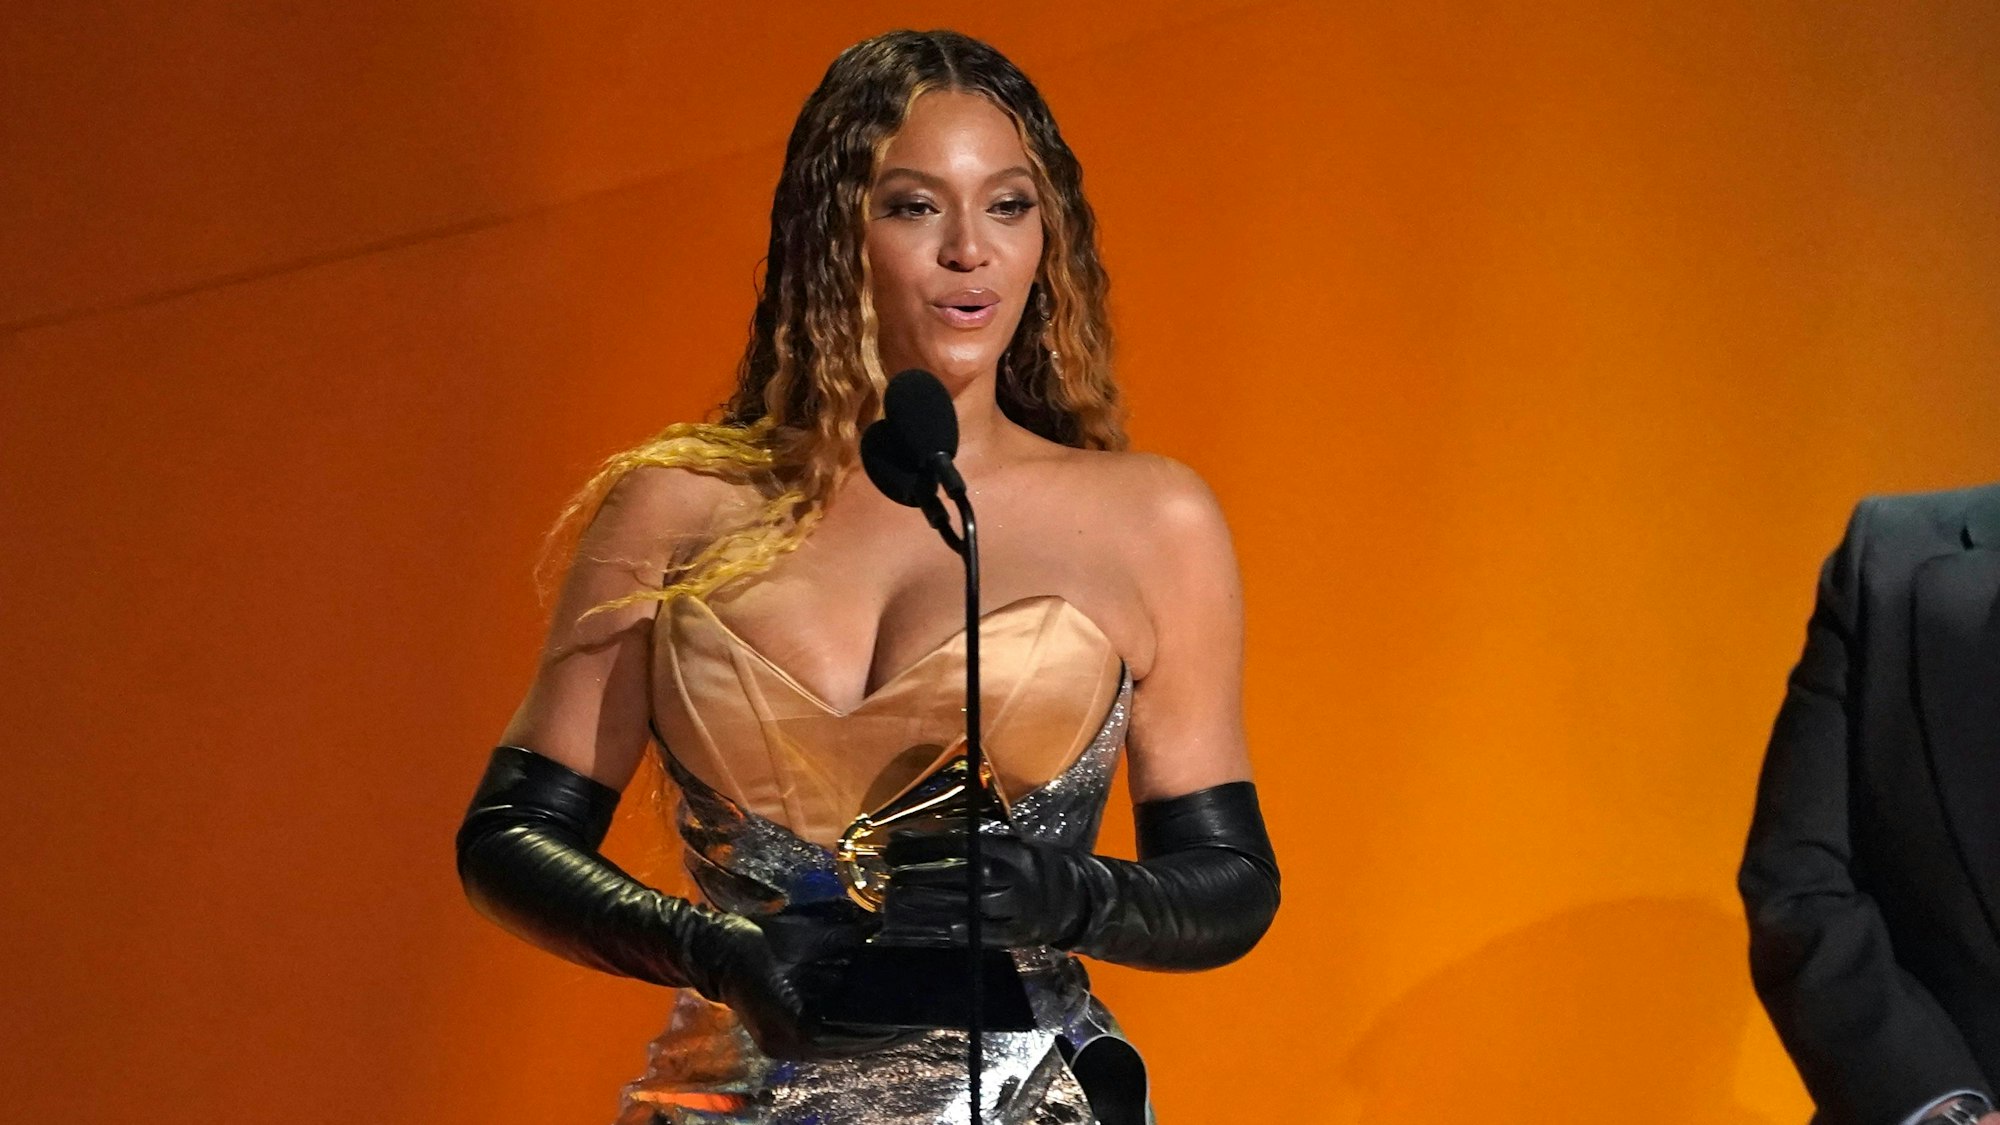 Beyonce nimmt den Preis für das beste Dance/Electronic Music Album für "Renaissance" bei der Verleihung der 65. Grammy Awards entgegen. Die begehrten Musikpreise werden in mehreren Kategorien von der Academy of Recording Arts and Sciences vergeben. +++ dpa-Bildfunk +++